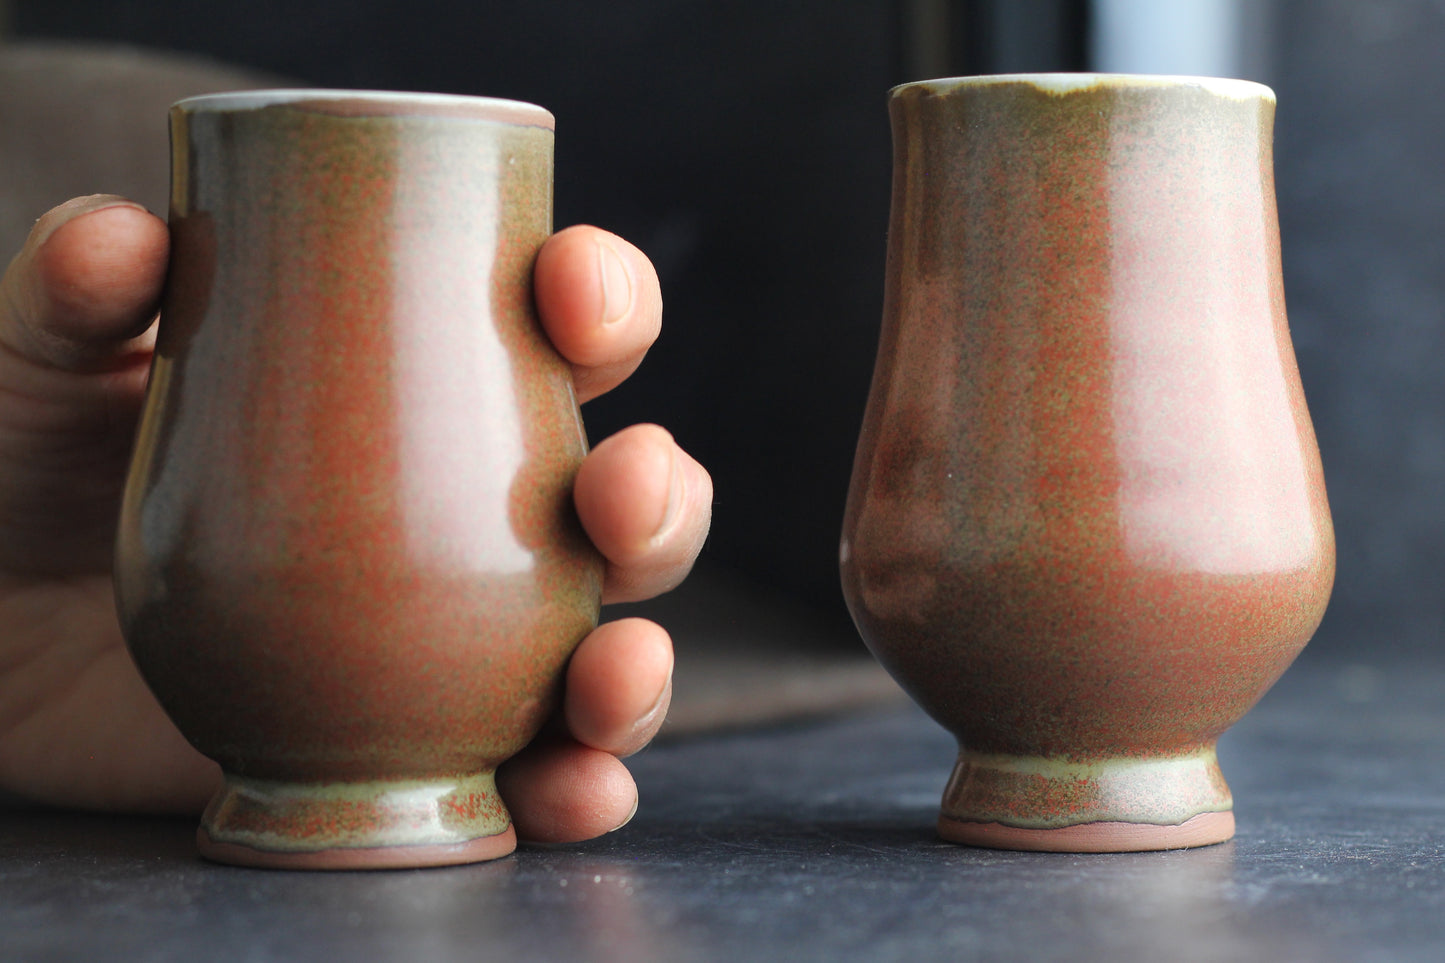 Ceramic Glencairn Tasting and Nosing Glass